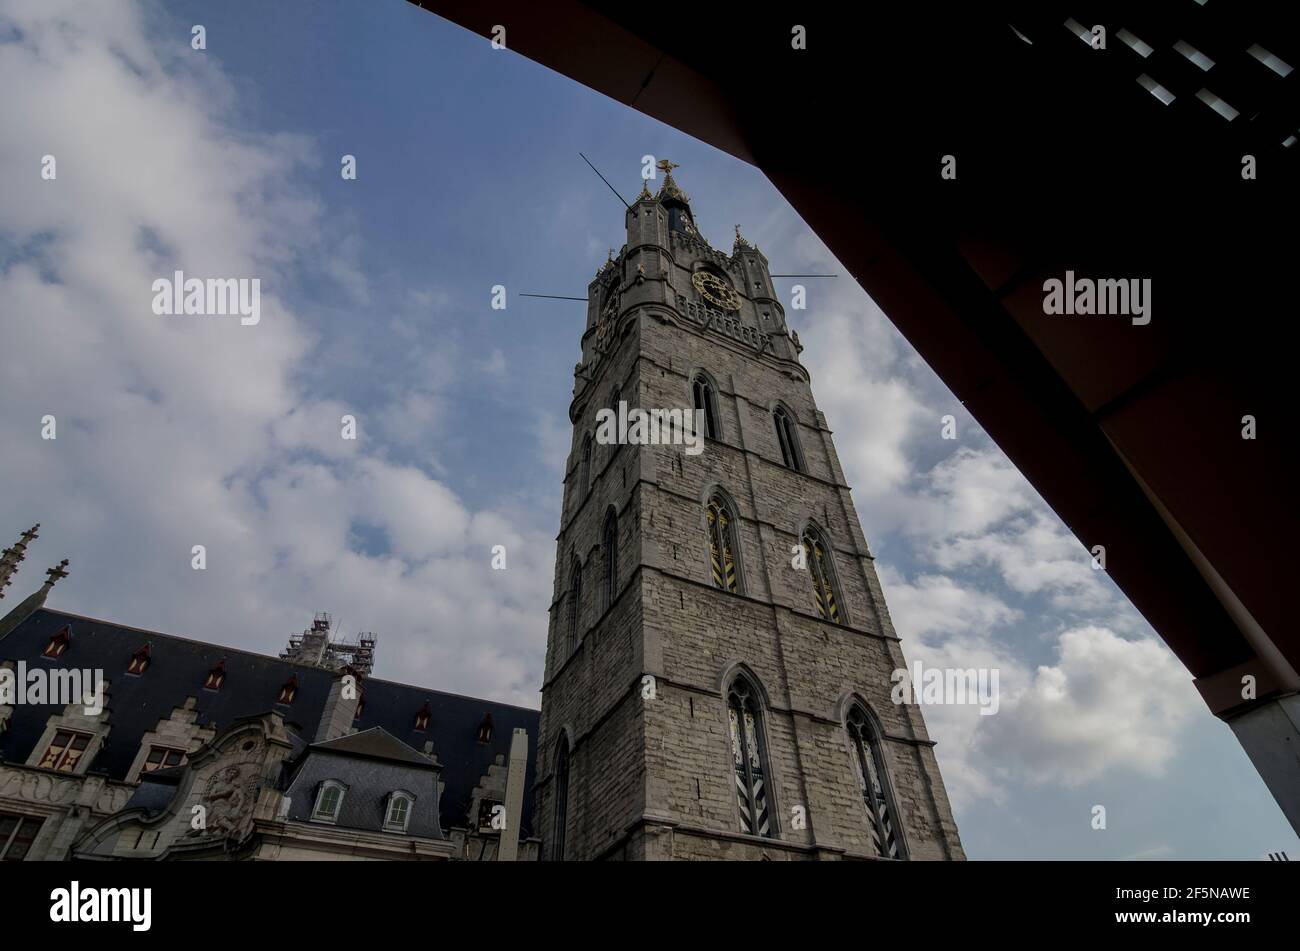 Der Belfort / Glockenturm / Belfried in Gent, Belgien unter dem hölzernen Baldachin des Stadshal / Stadtpavillons. Stockfoto